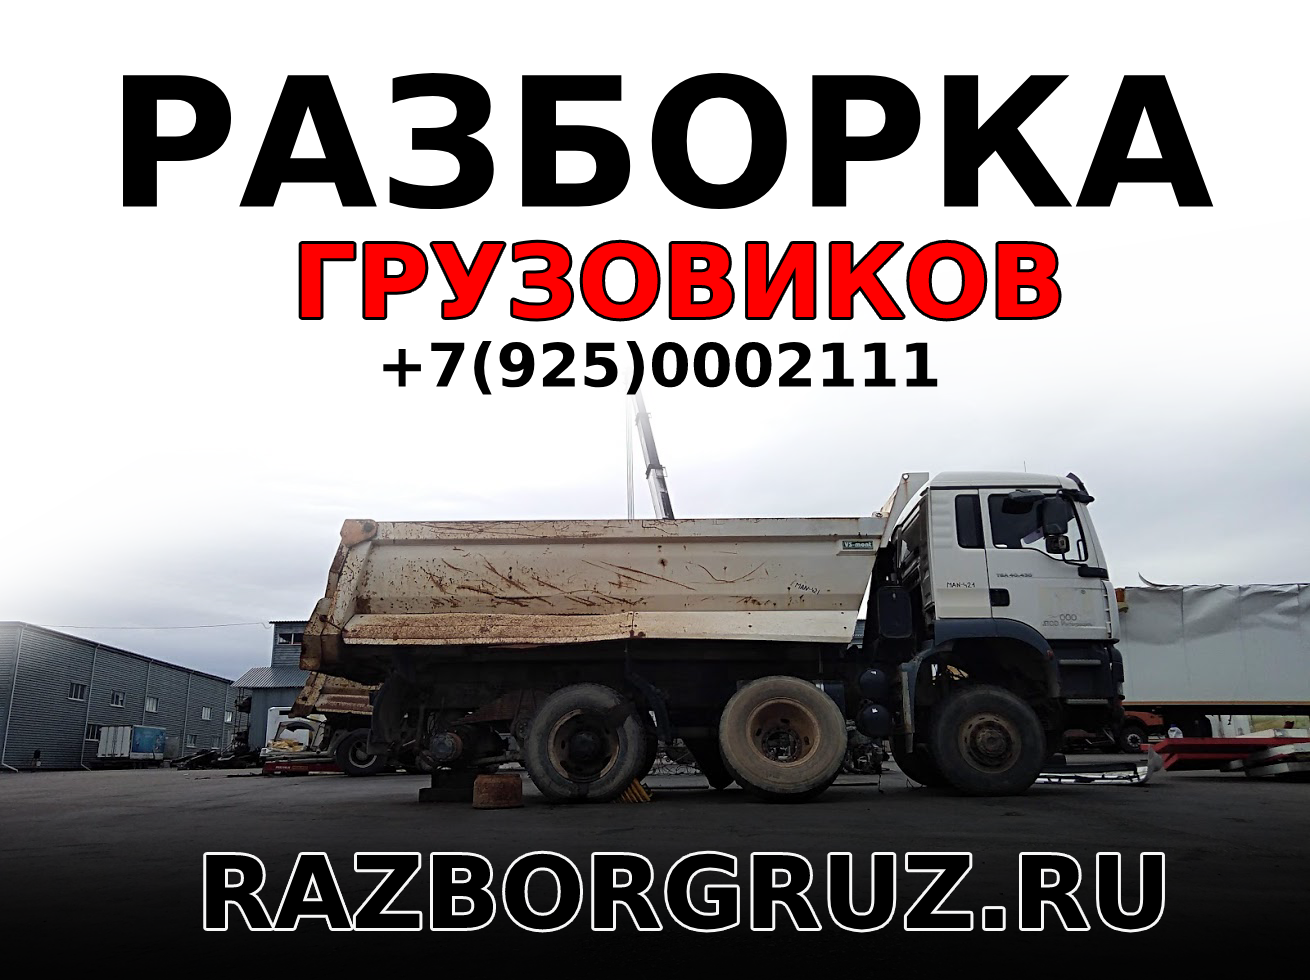 Разборка грузовиков и полуприцепов в москве грузовой разбор авторазбор прицепов и полуприцепов +7(925)0002111